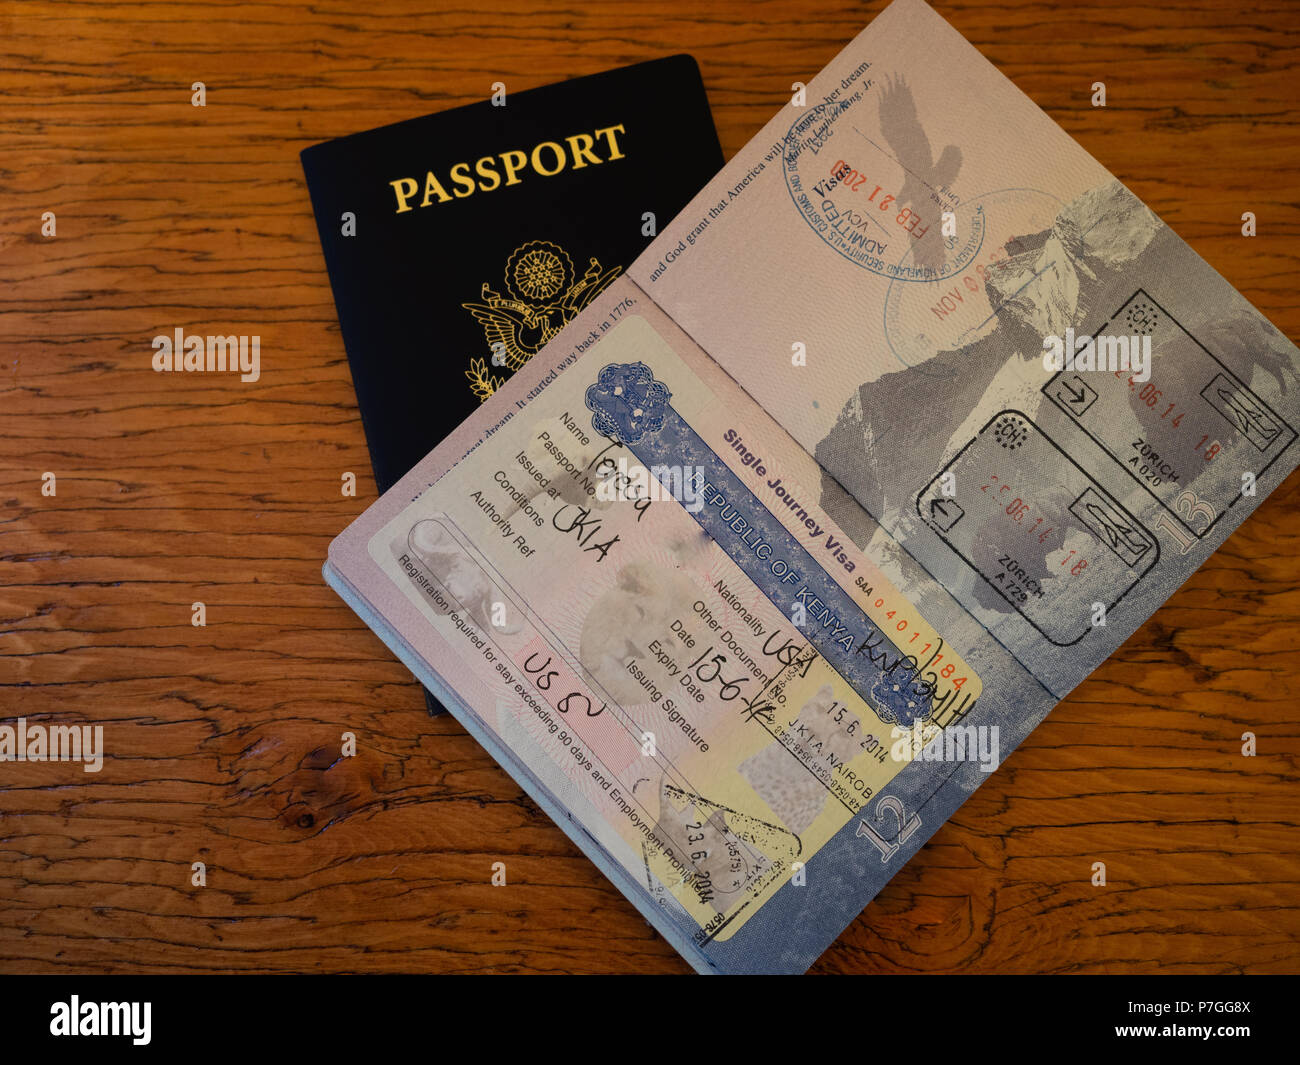 Un passeport nous montrant des timbres du Kenya et le visa requis pour l'entrée. Photographié sur une table en bois. Banque D'Images